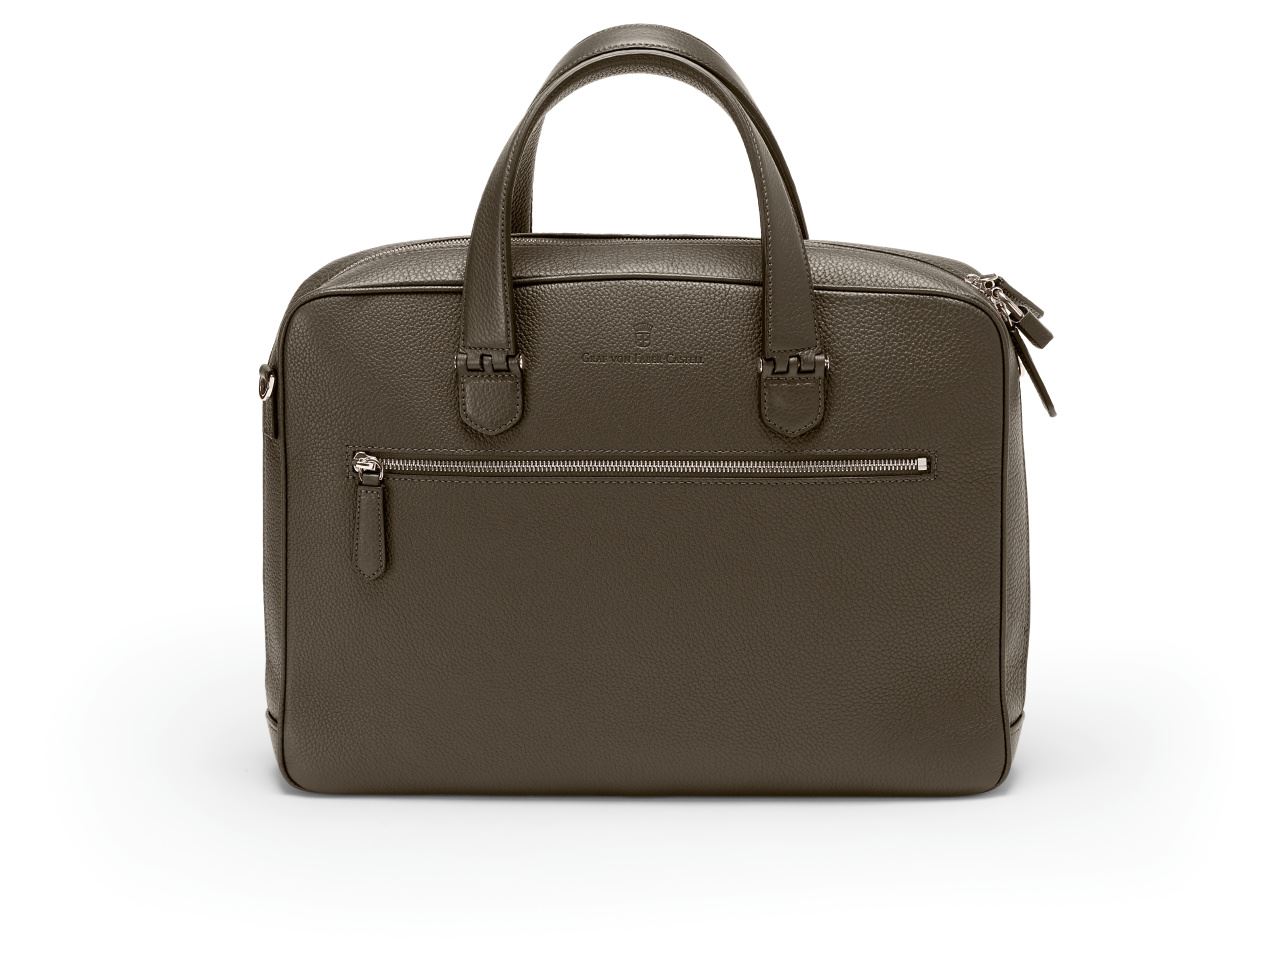 Graf-von-Faber-Castell - Briefcase Cashmere with one compartment, Dark Brown